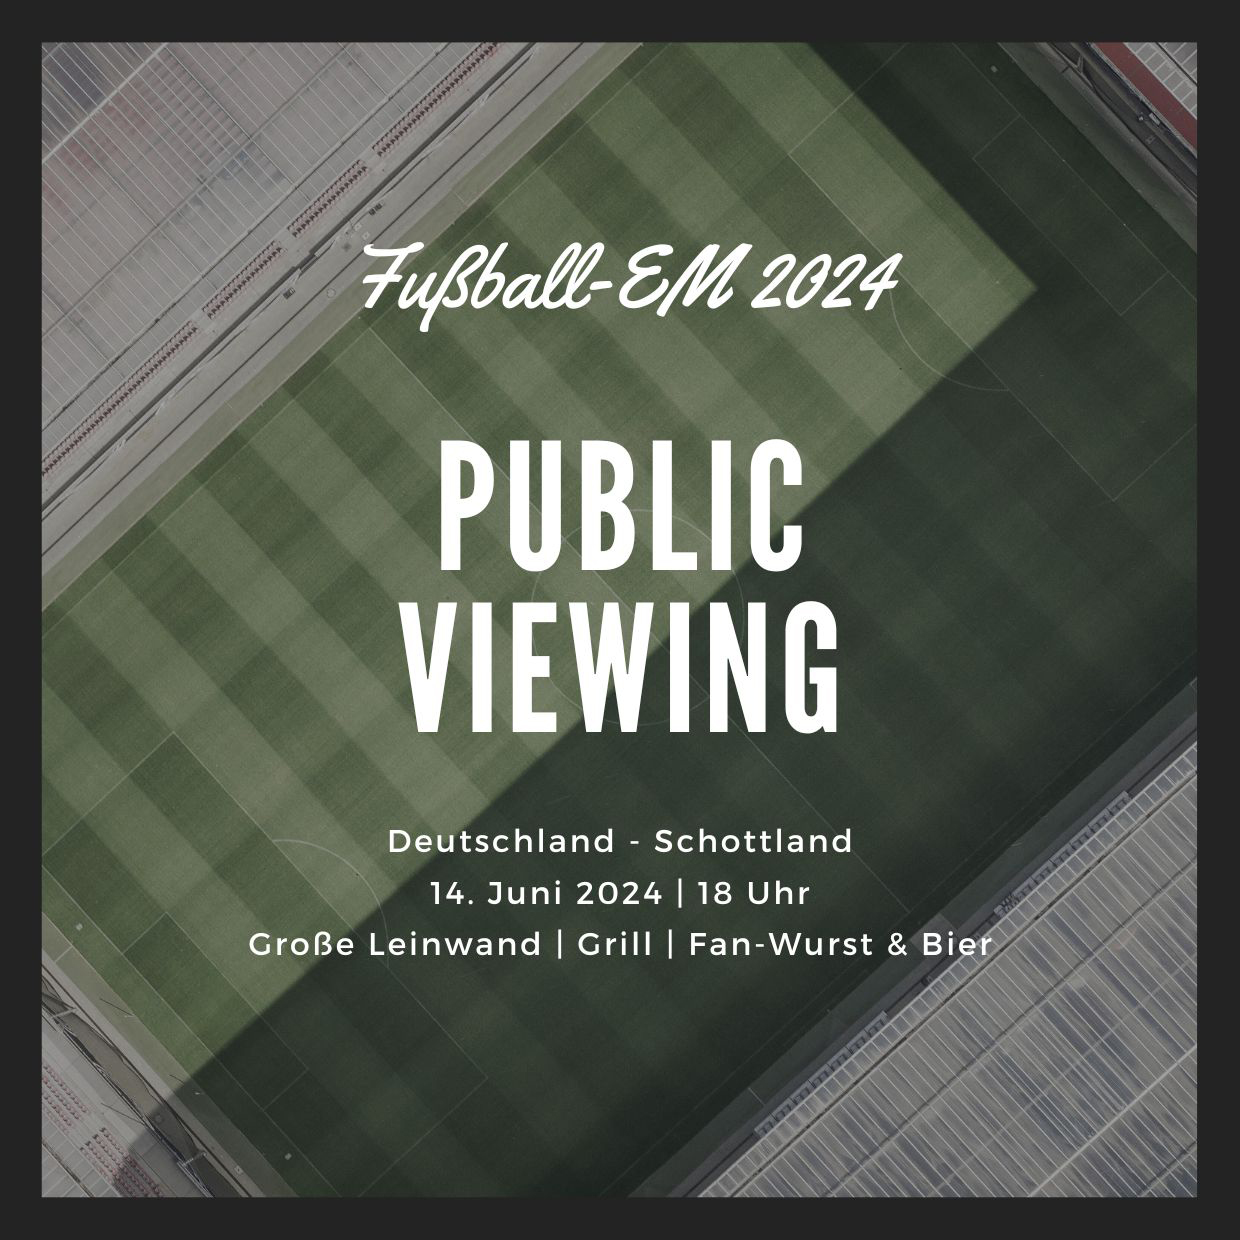 Public Viewing im Hafenhotel zu Putbus